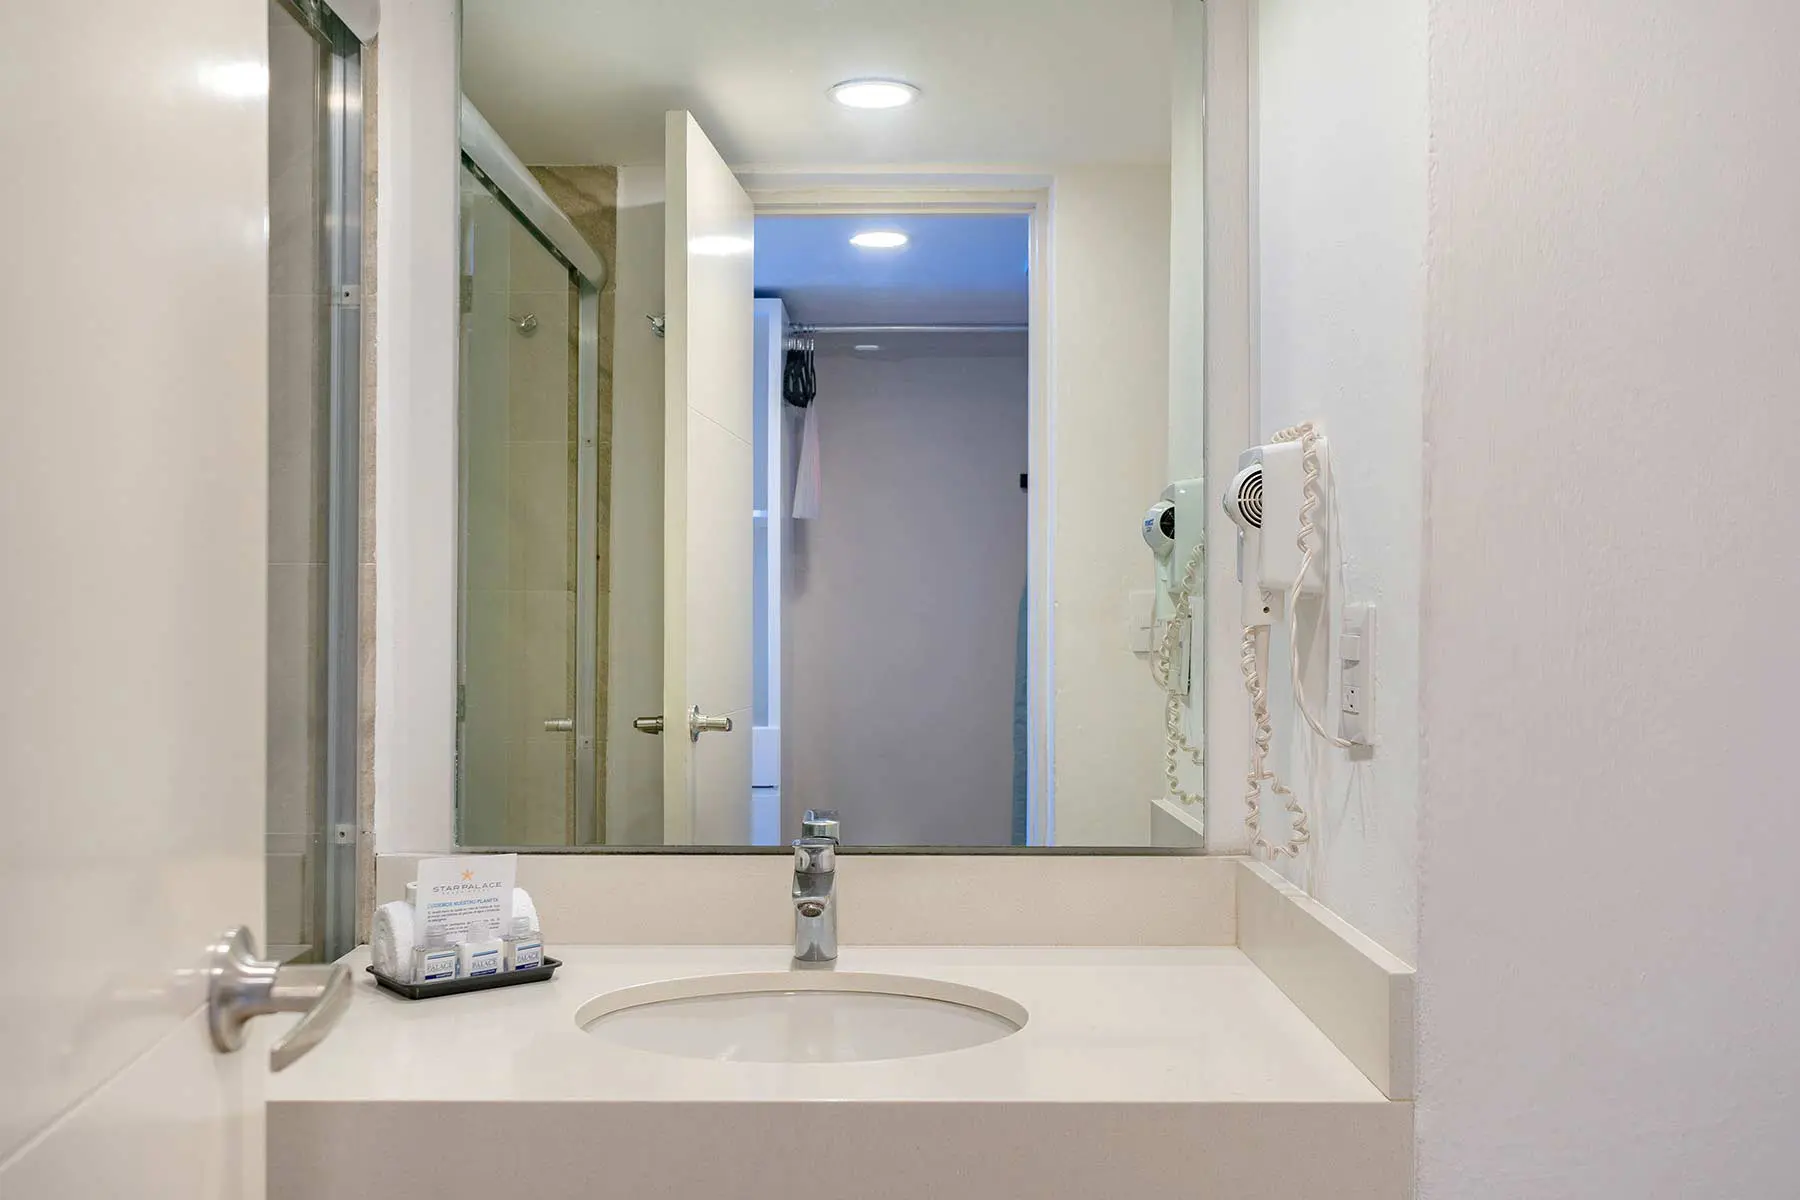 Baño de habitación para cuatro personas en hotel Star Palace Mazatlan